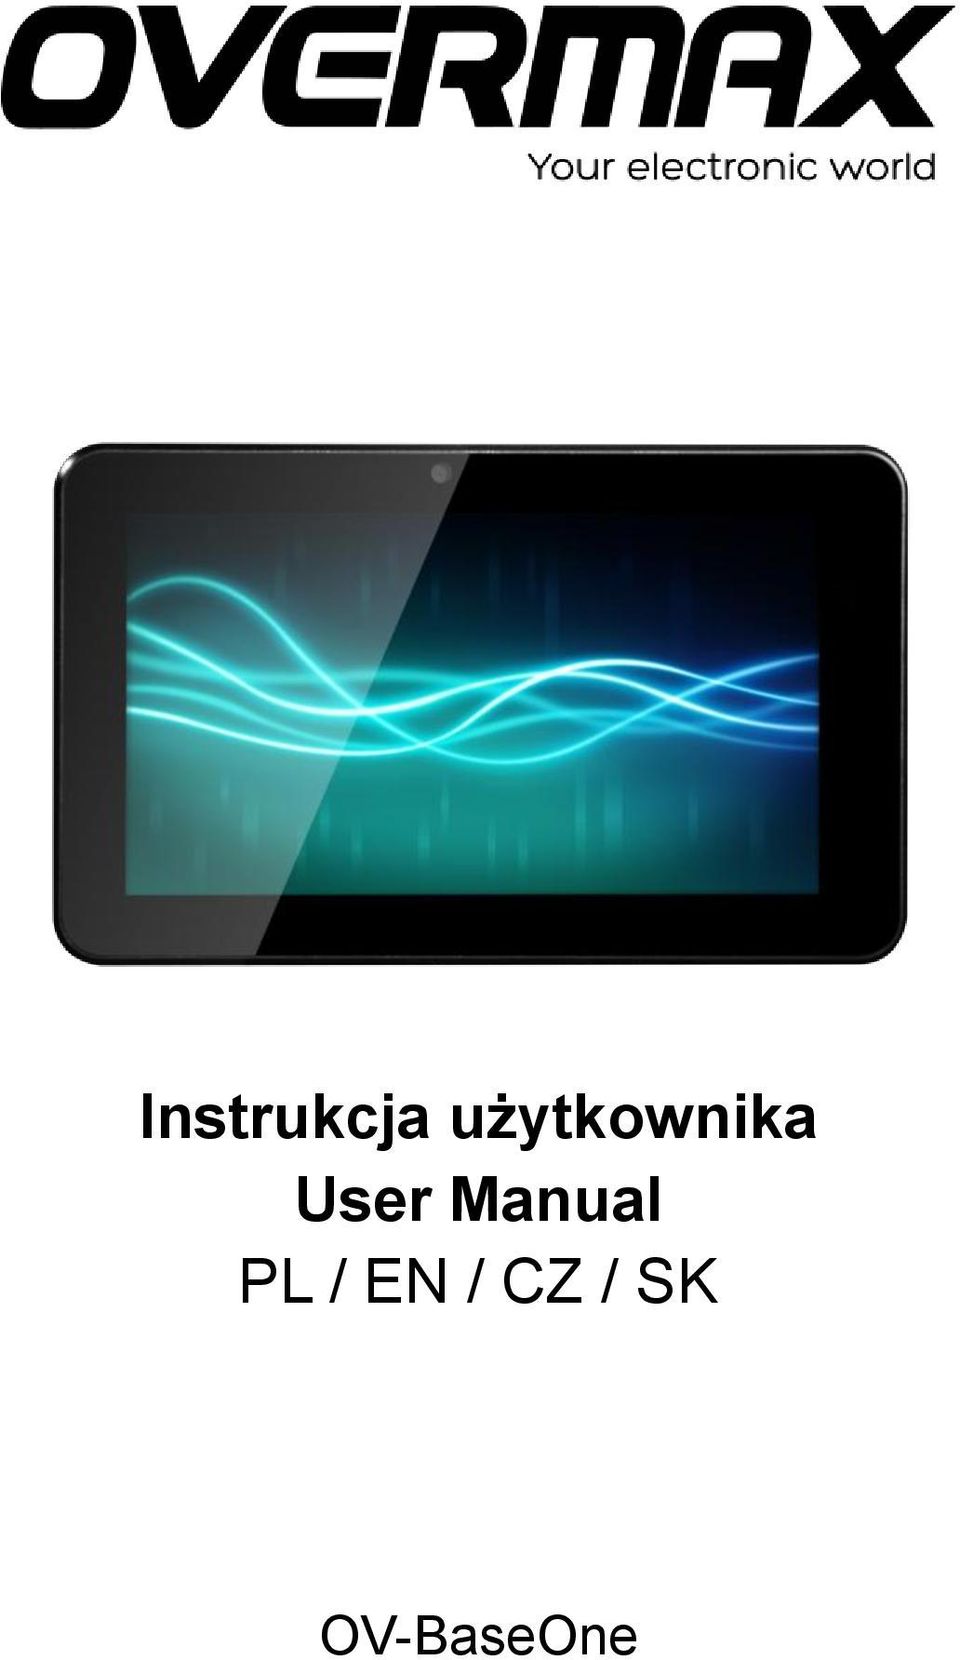 User Manual PL